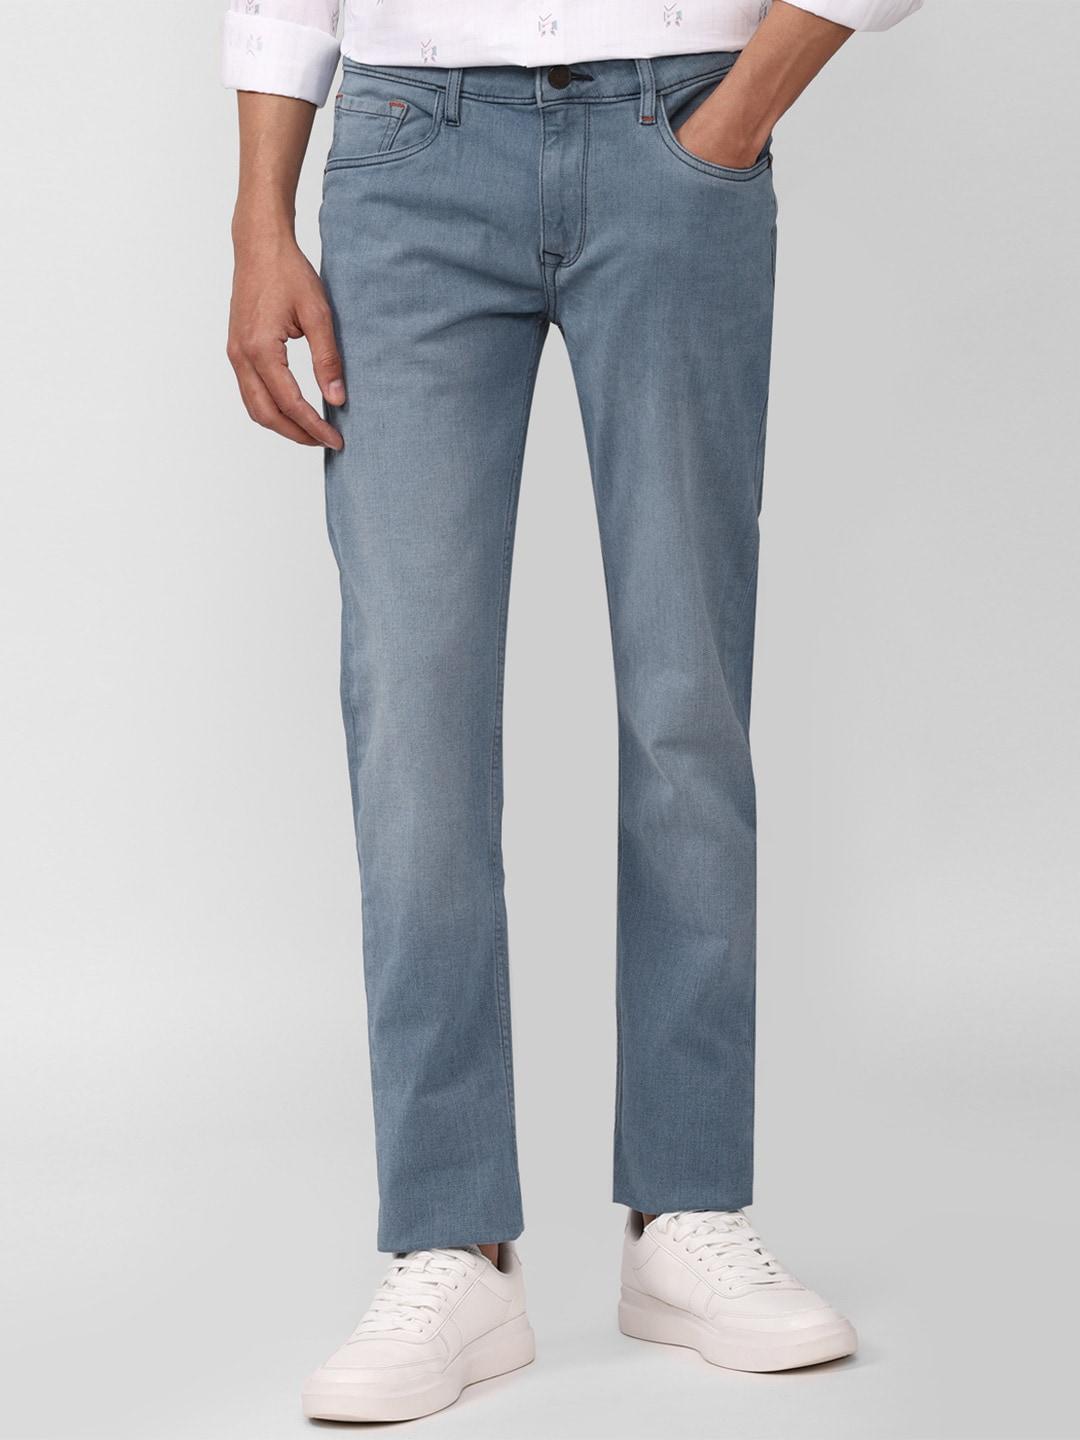 simon-carter-london-men-blue-straight-fit-jeans